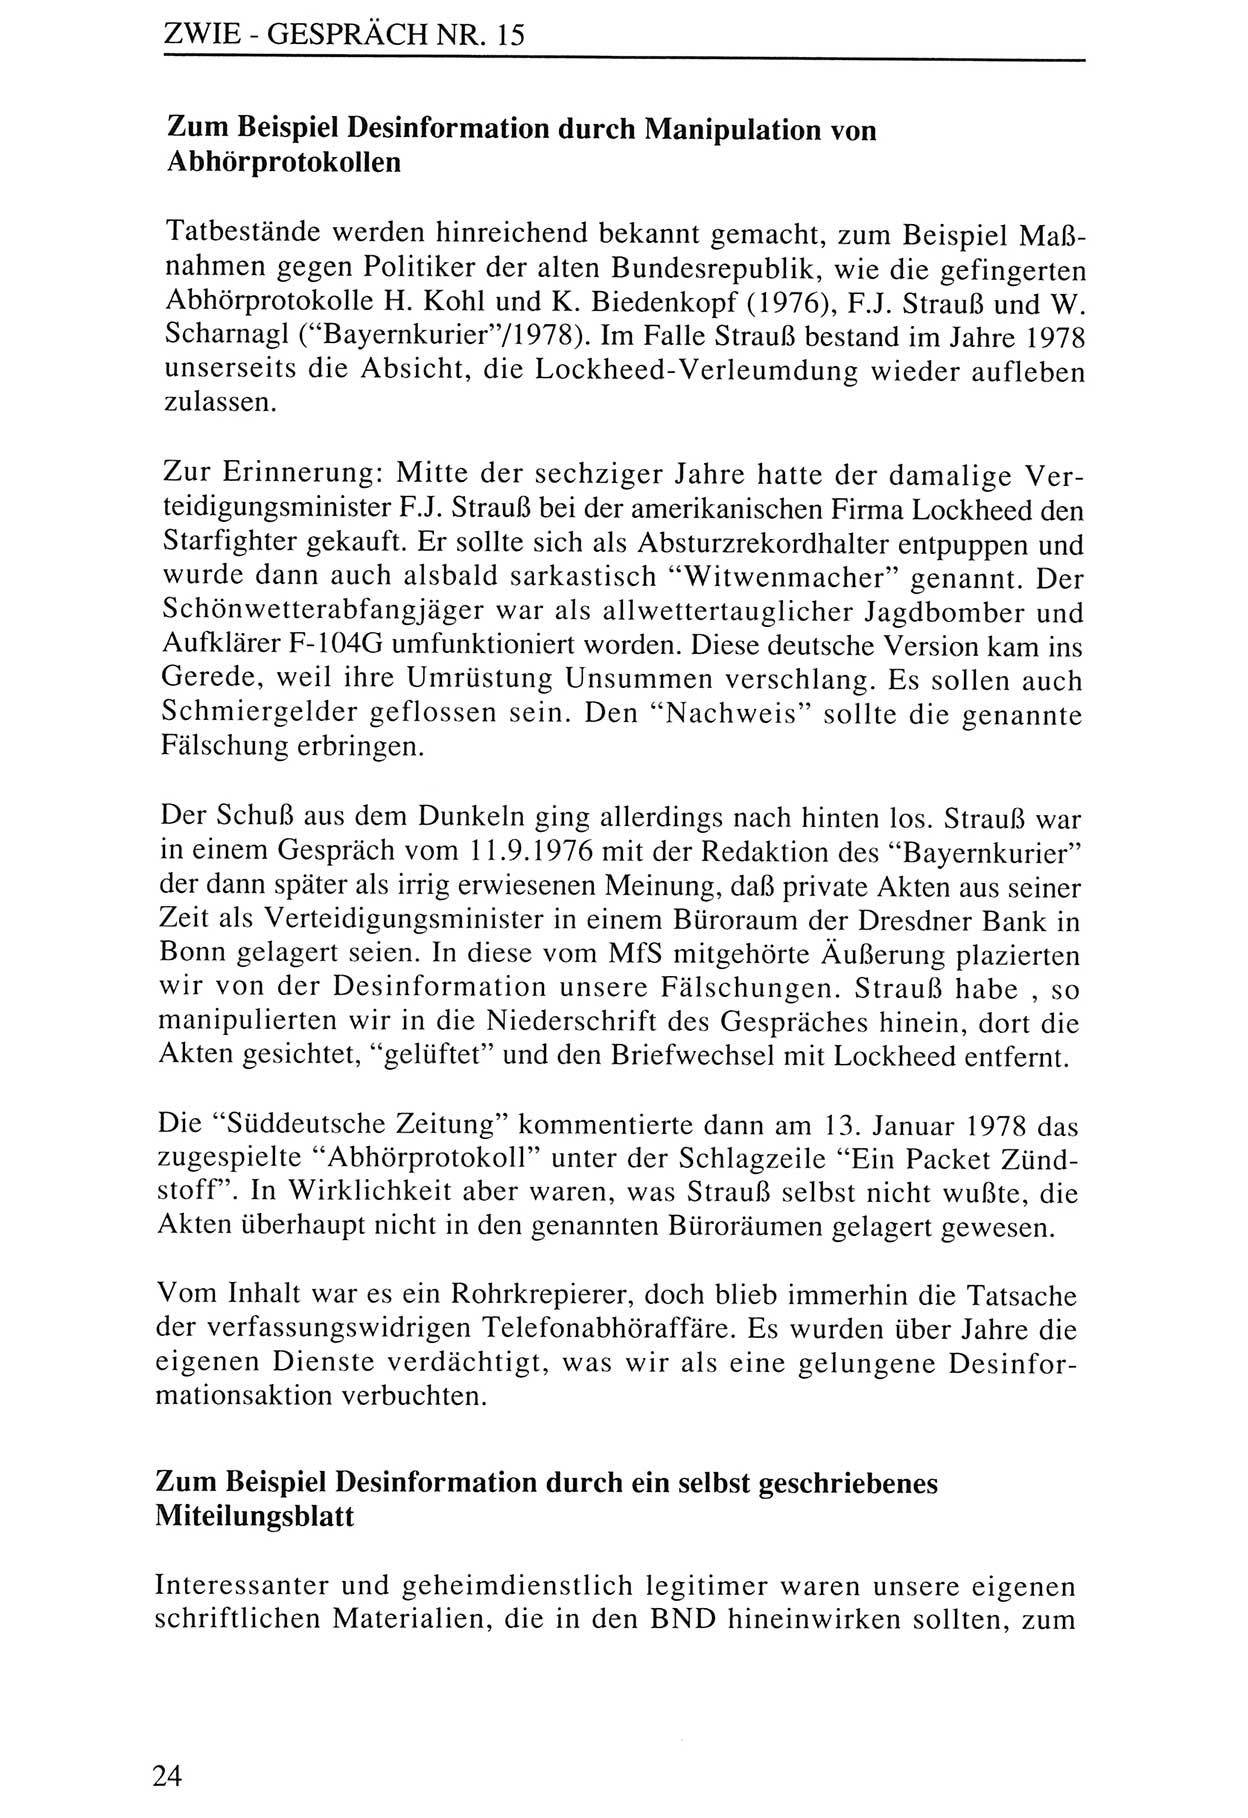 Zwie-Gespräch, Beiträge zur Aufarbeitung der Staatssicherheits-Vergangenheit [Deutsche Demokratische Republik (DDR)], Ausgabe Nr. 15, Berlin 1993, Seite 24 (Zwie-Gespr. Ausg. 15 1993, S. 24)